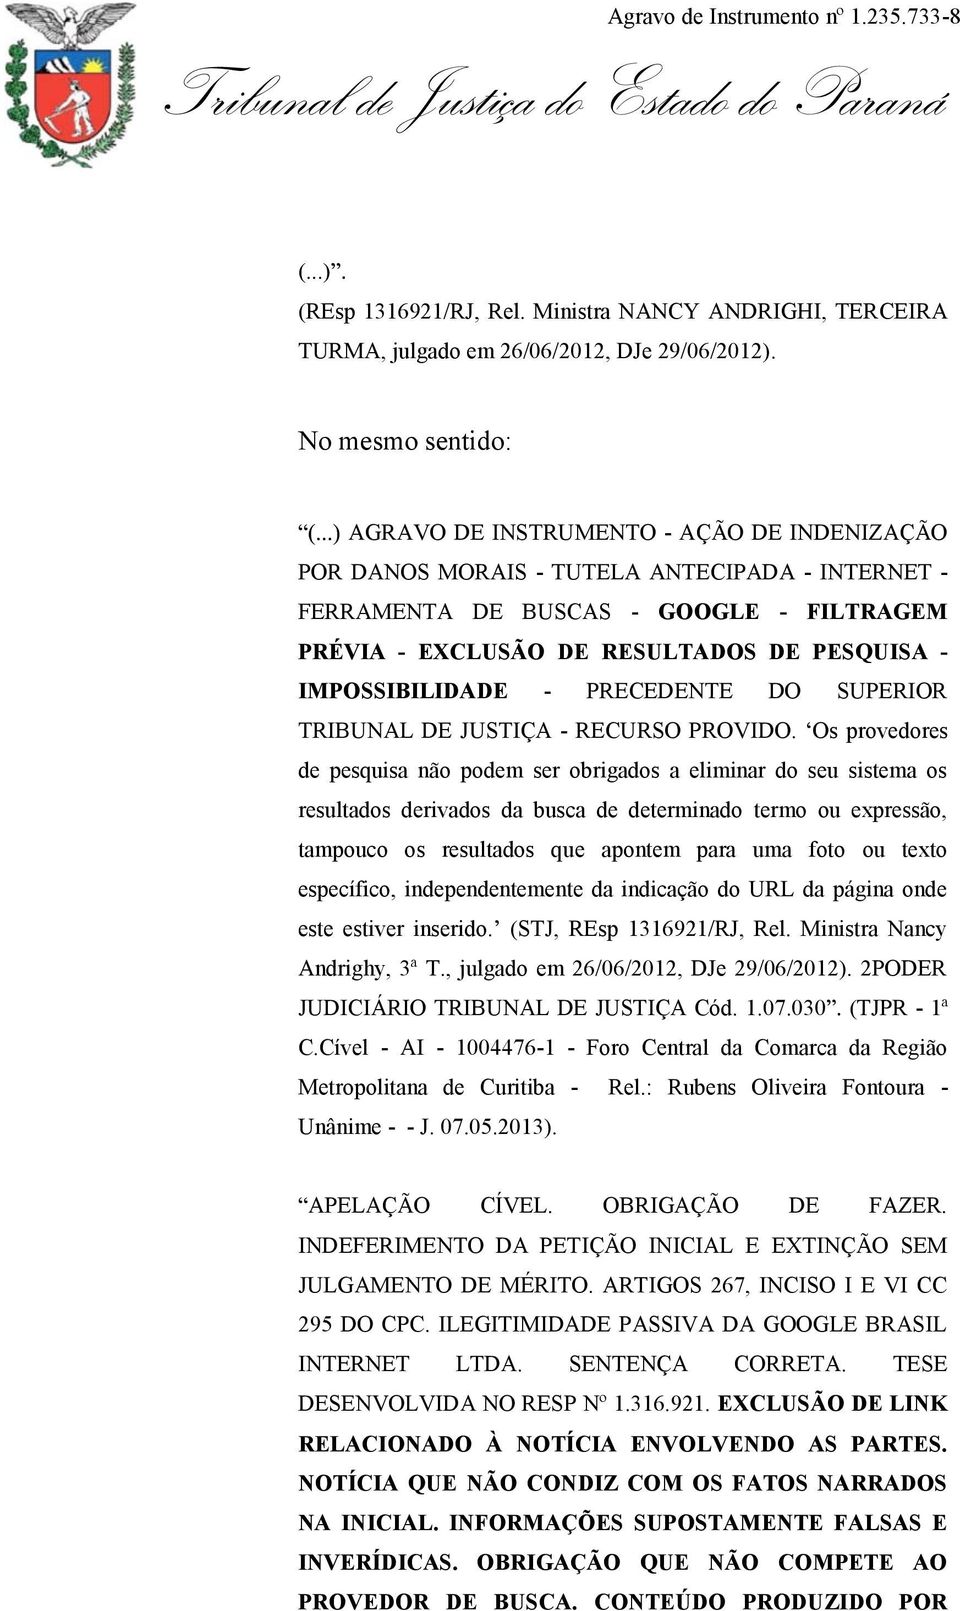 IMPOSSIBILIDADE - PRECEDENTE DO SUPERIOR TRIBUNAL DE JUSTIÇA - RECURSO PROVIDO.